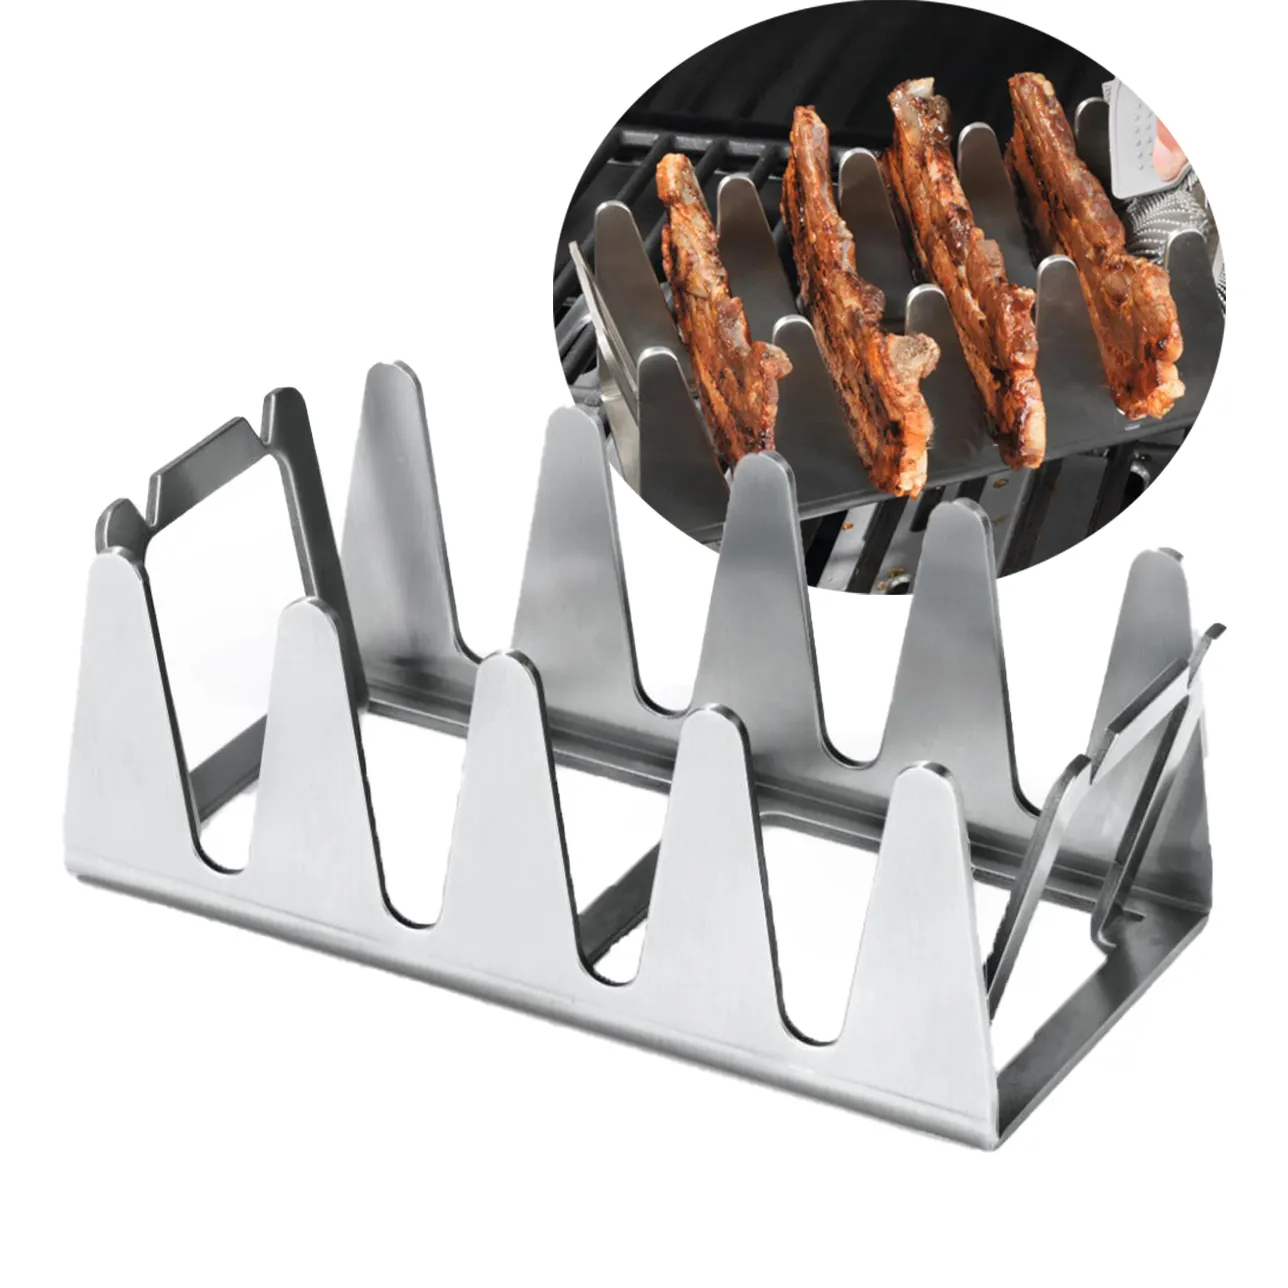 2022 più nuovo Multi Grill Rack a buon mercato in acciaio inox BBQ Grill Rack Freestand Multi Grill stand BBQ Rescher accessori per Barbecue